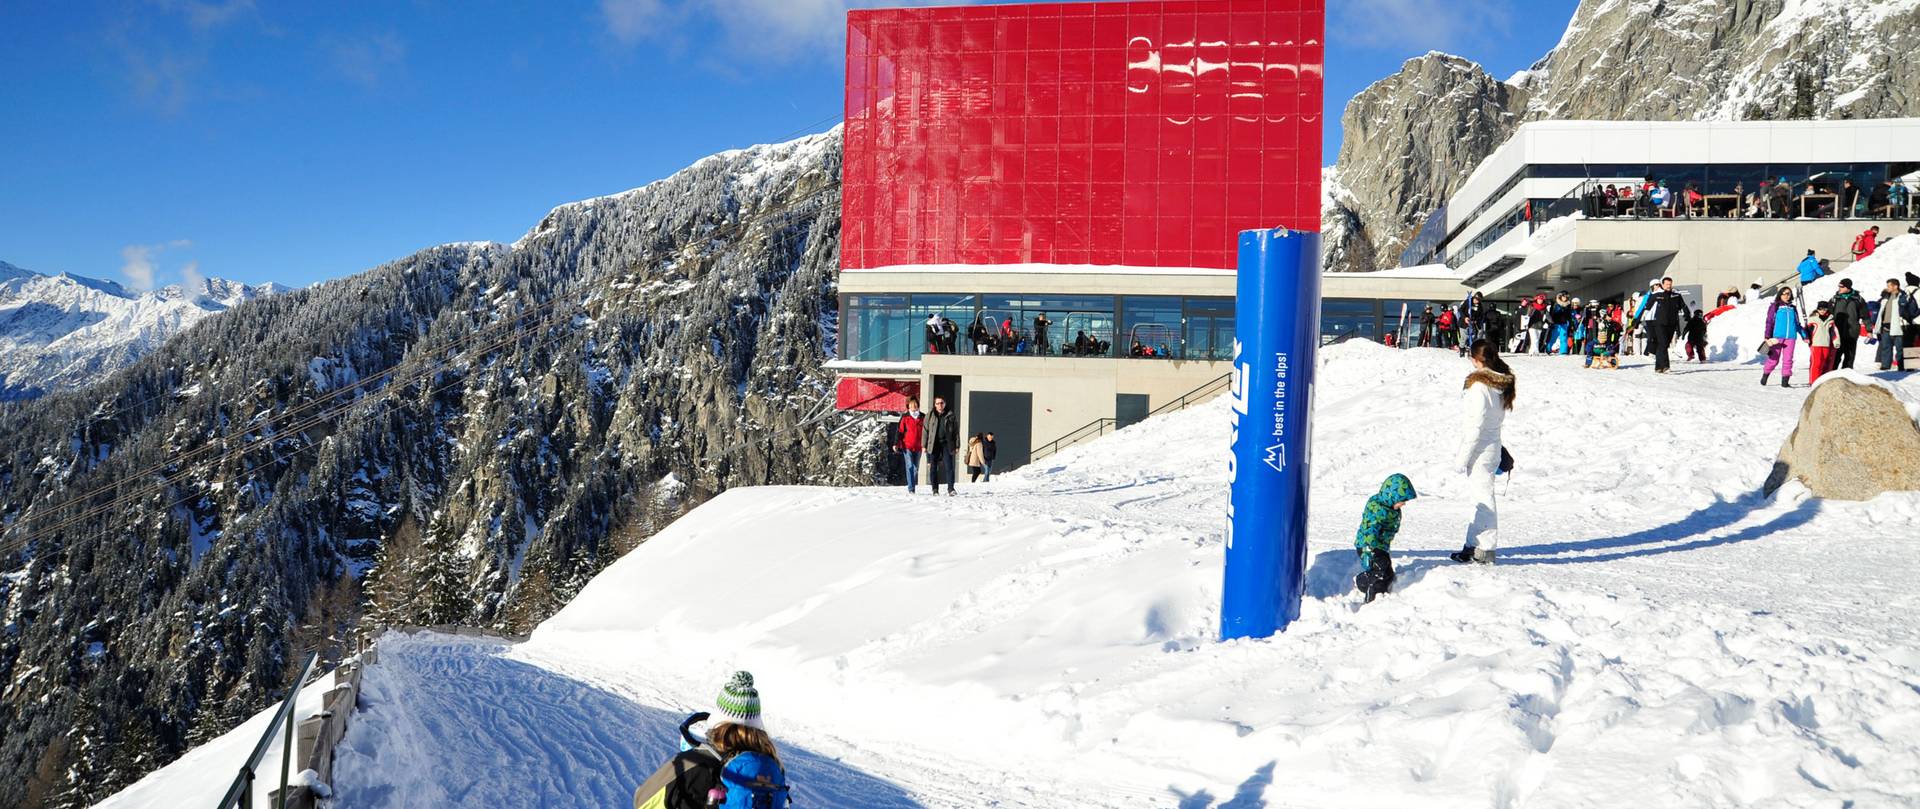 Skigebiet Meran 2000 Rodelbahn Hotel Hafling | Area sciistica Merano 2000 pista da slittino Hotel Avelengo | Ski area Merano 2000 toboggan run Hotel Hafling